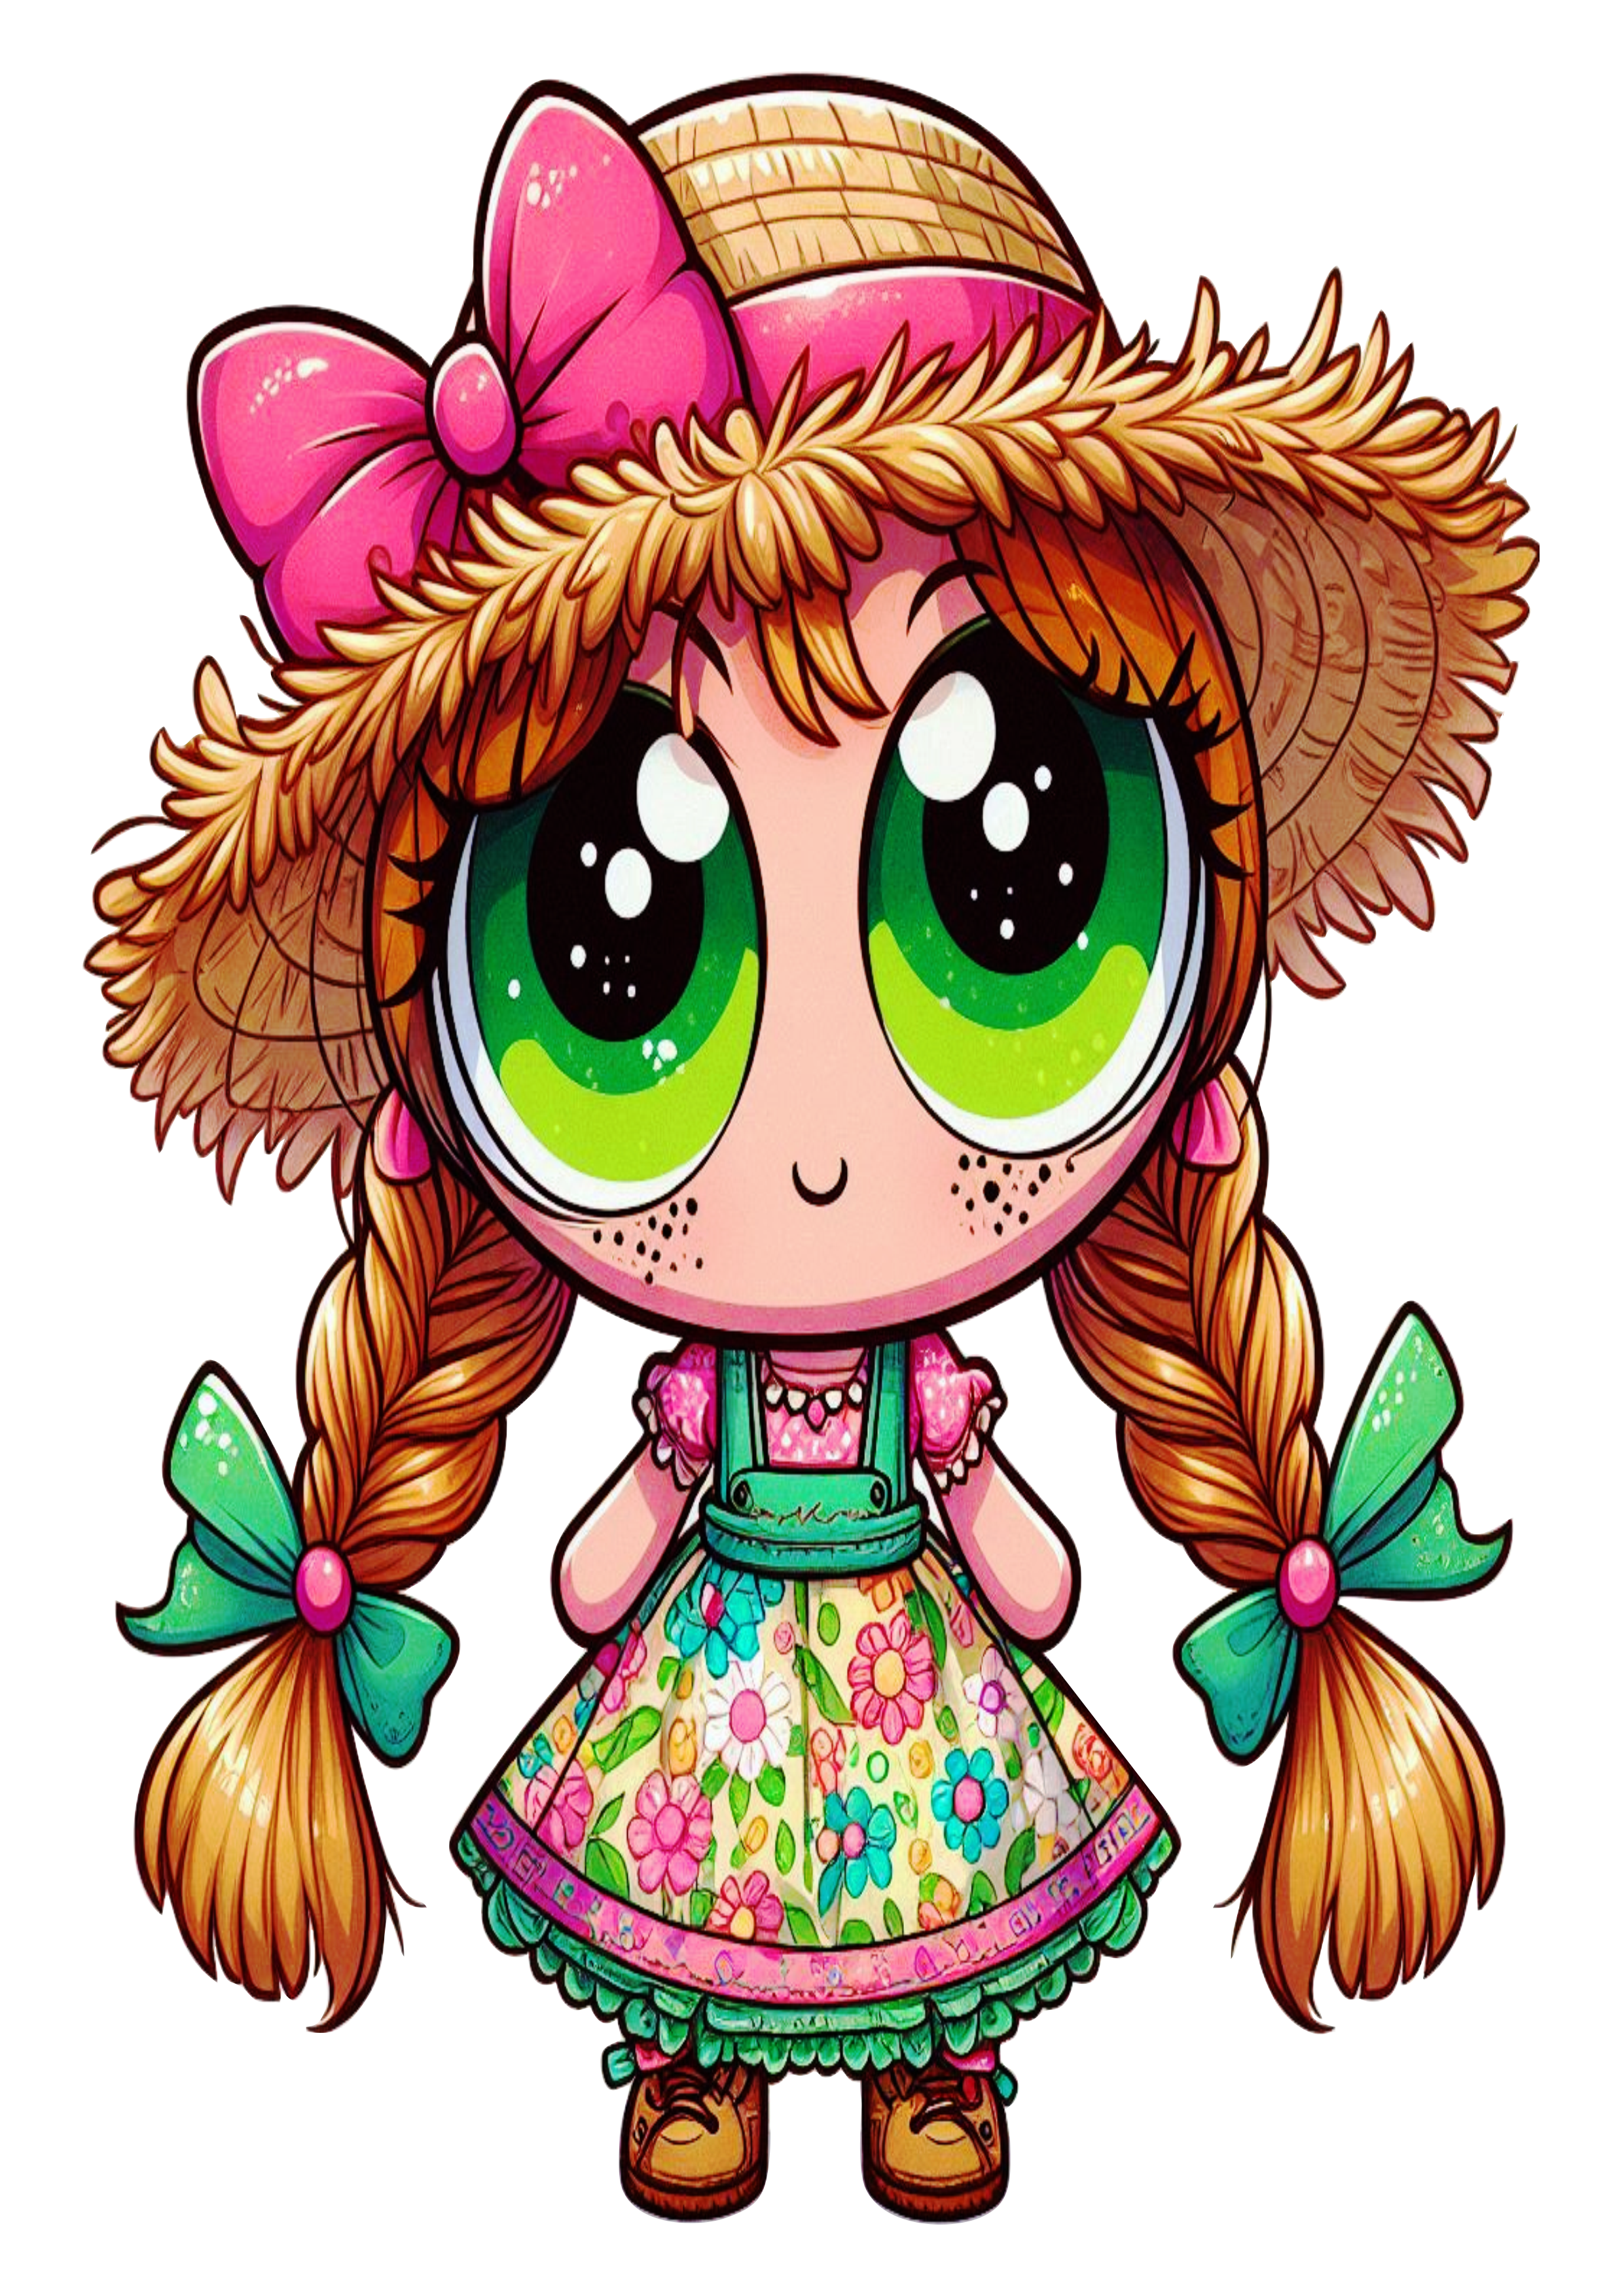 As meninas superpoderosas Docinho desenho simples com fantasia de festa junina png vestido florido chapéu de palha caipira